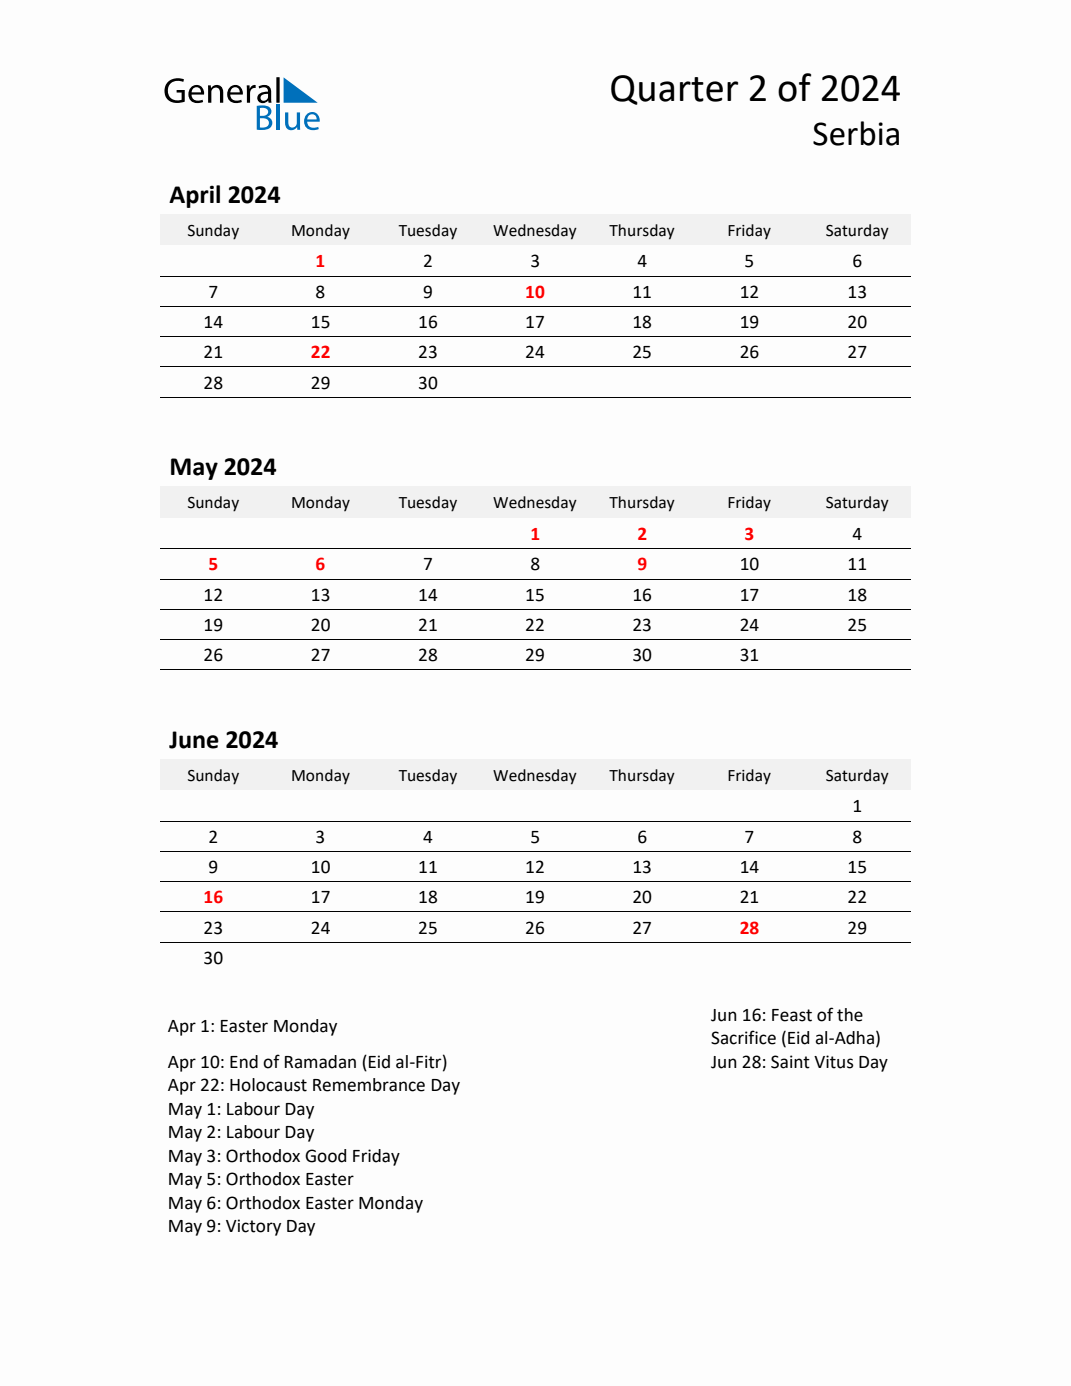 Q2 2024 Quarterly Calendar with Serbia Holidays